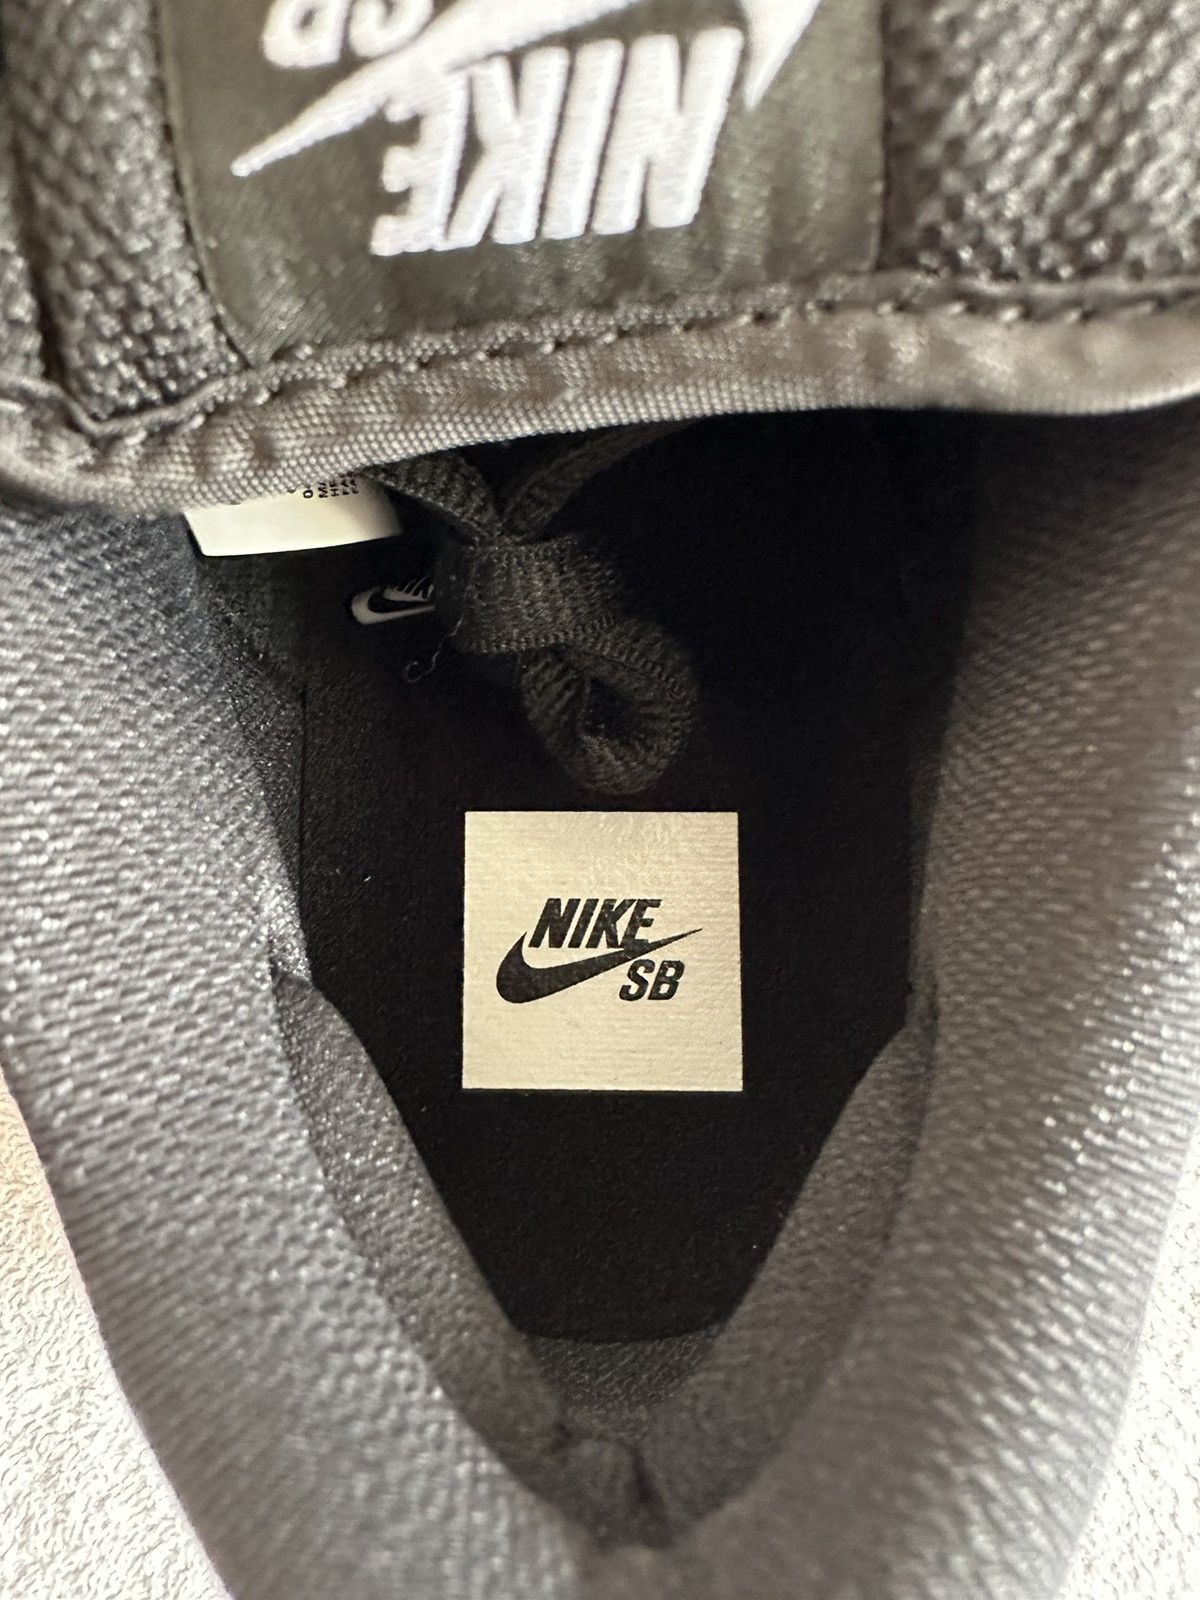 Nike Nike SB Dunk Low Pro Black Gum Size 9.5 Size US 9.5 / EU 42-43 - 12 Thumbnail